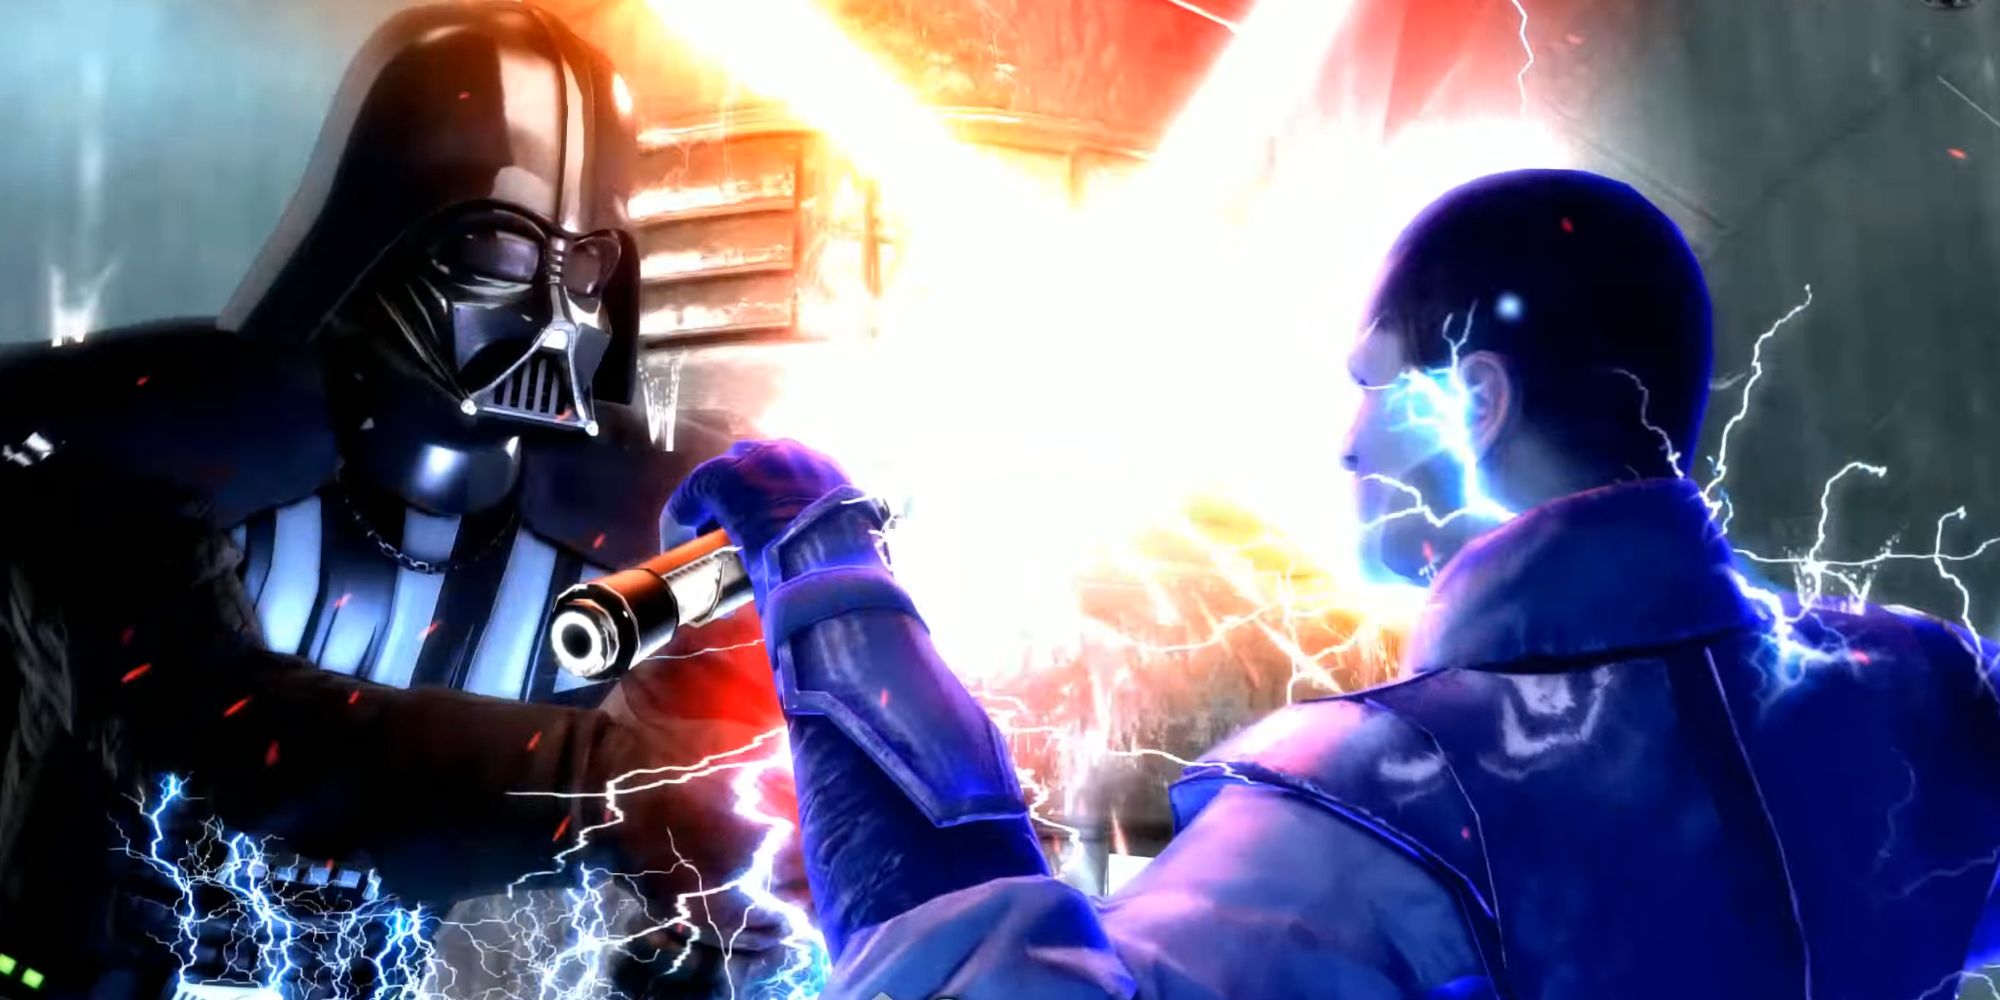 Starkiller battling Darth Vader in The Force Unleashed II